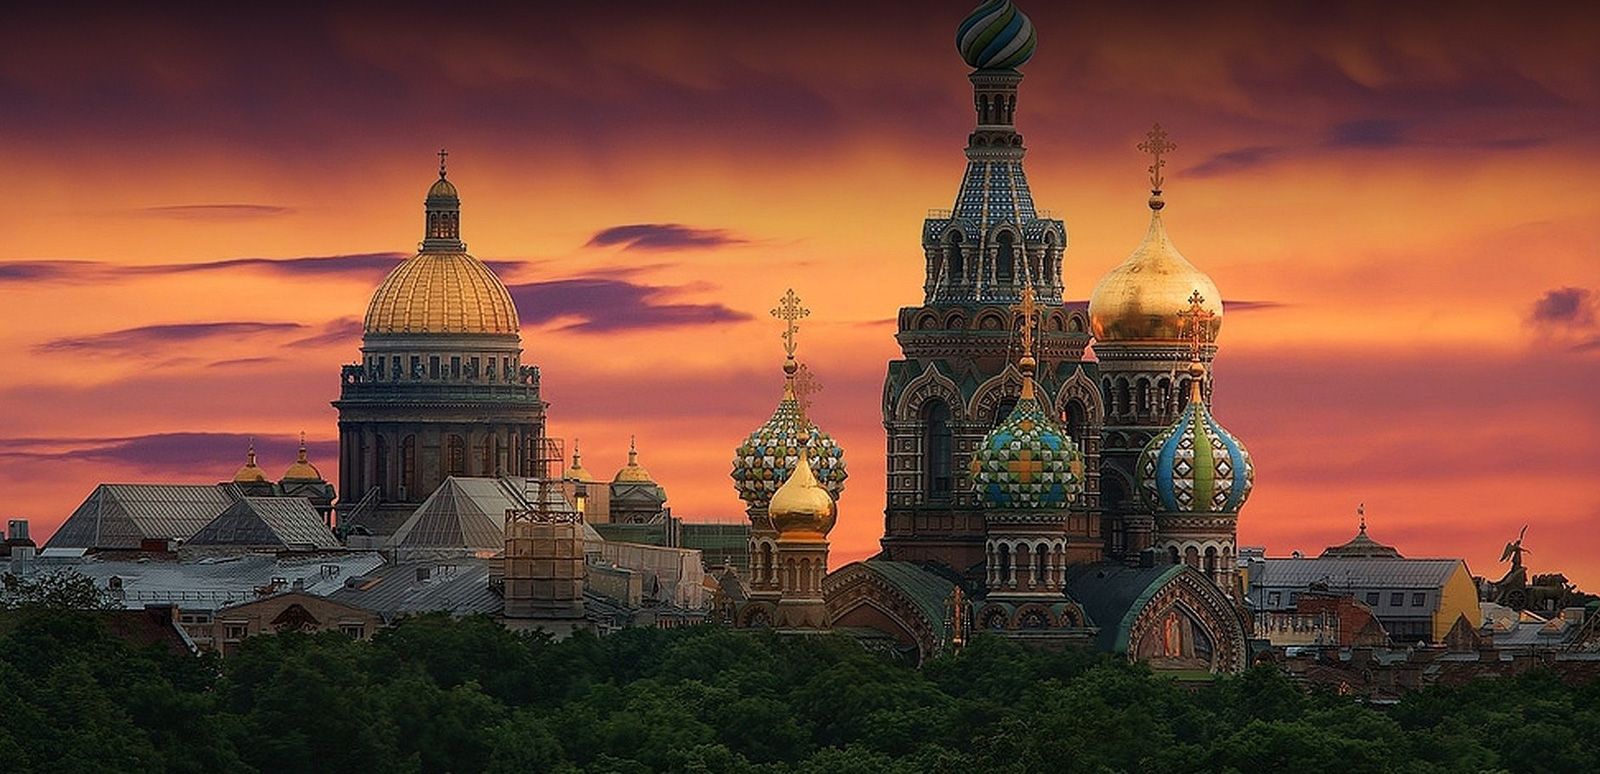 MOSCOW - ทัวร์มอสโคว ทัวร์รัสเซีย พระราชวังเครมลิน